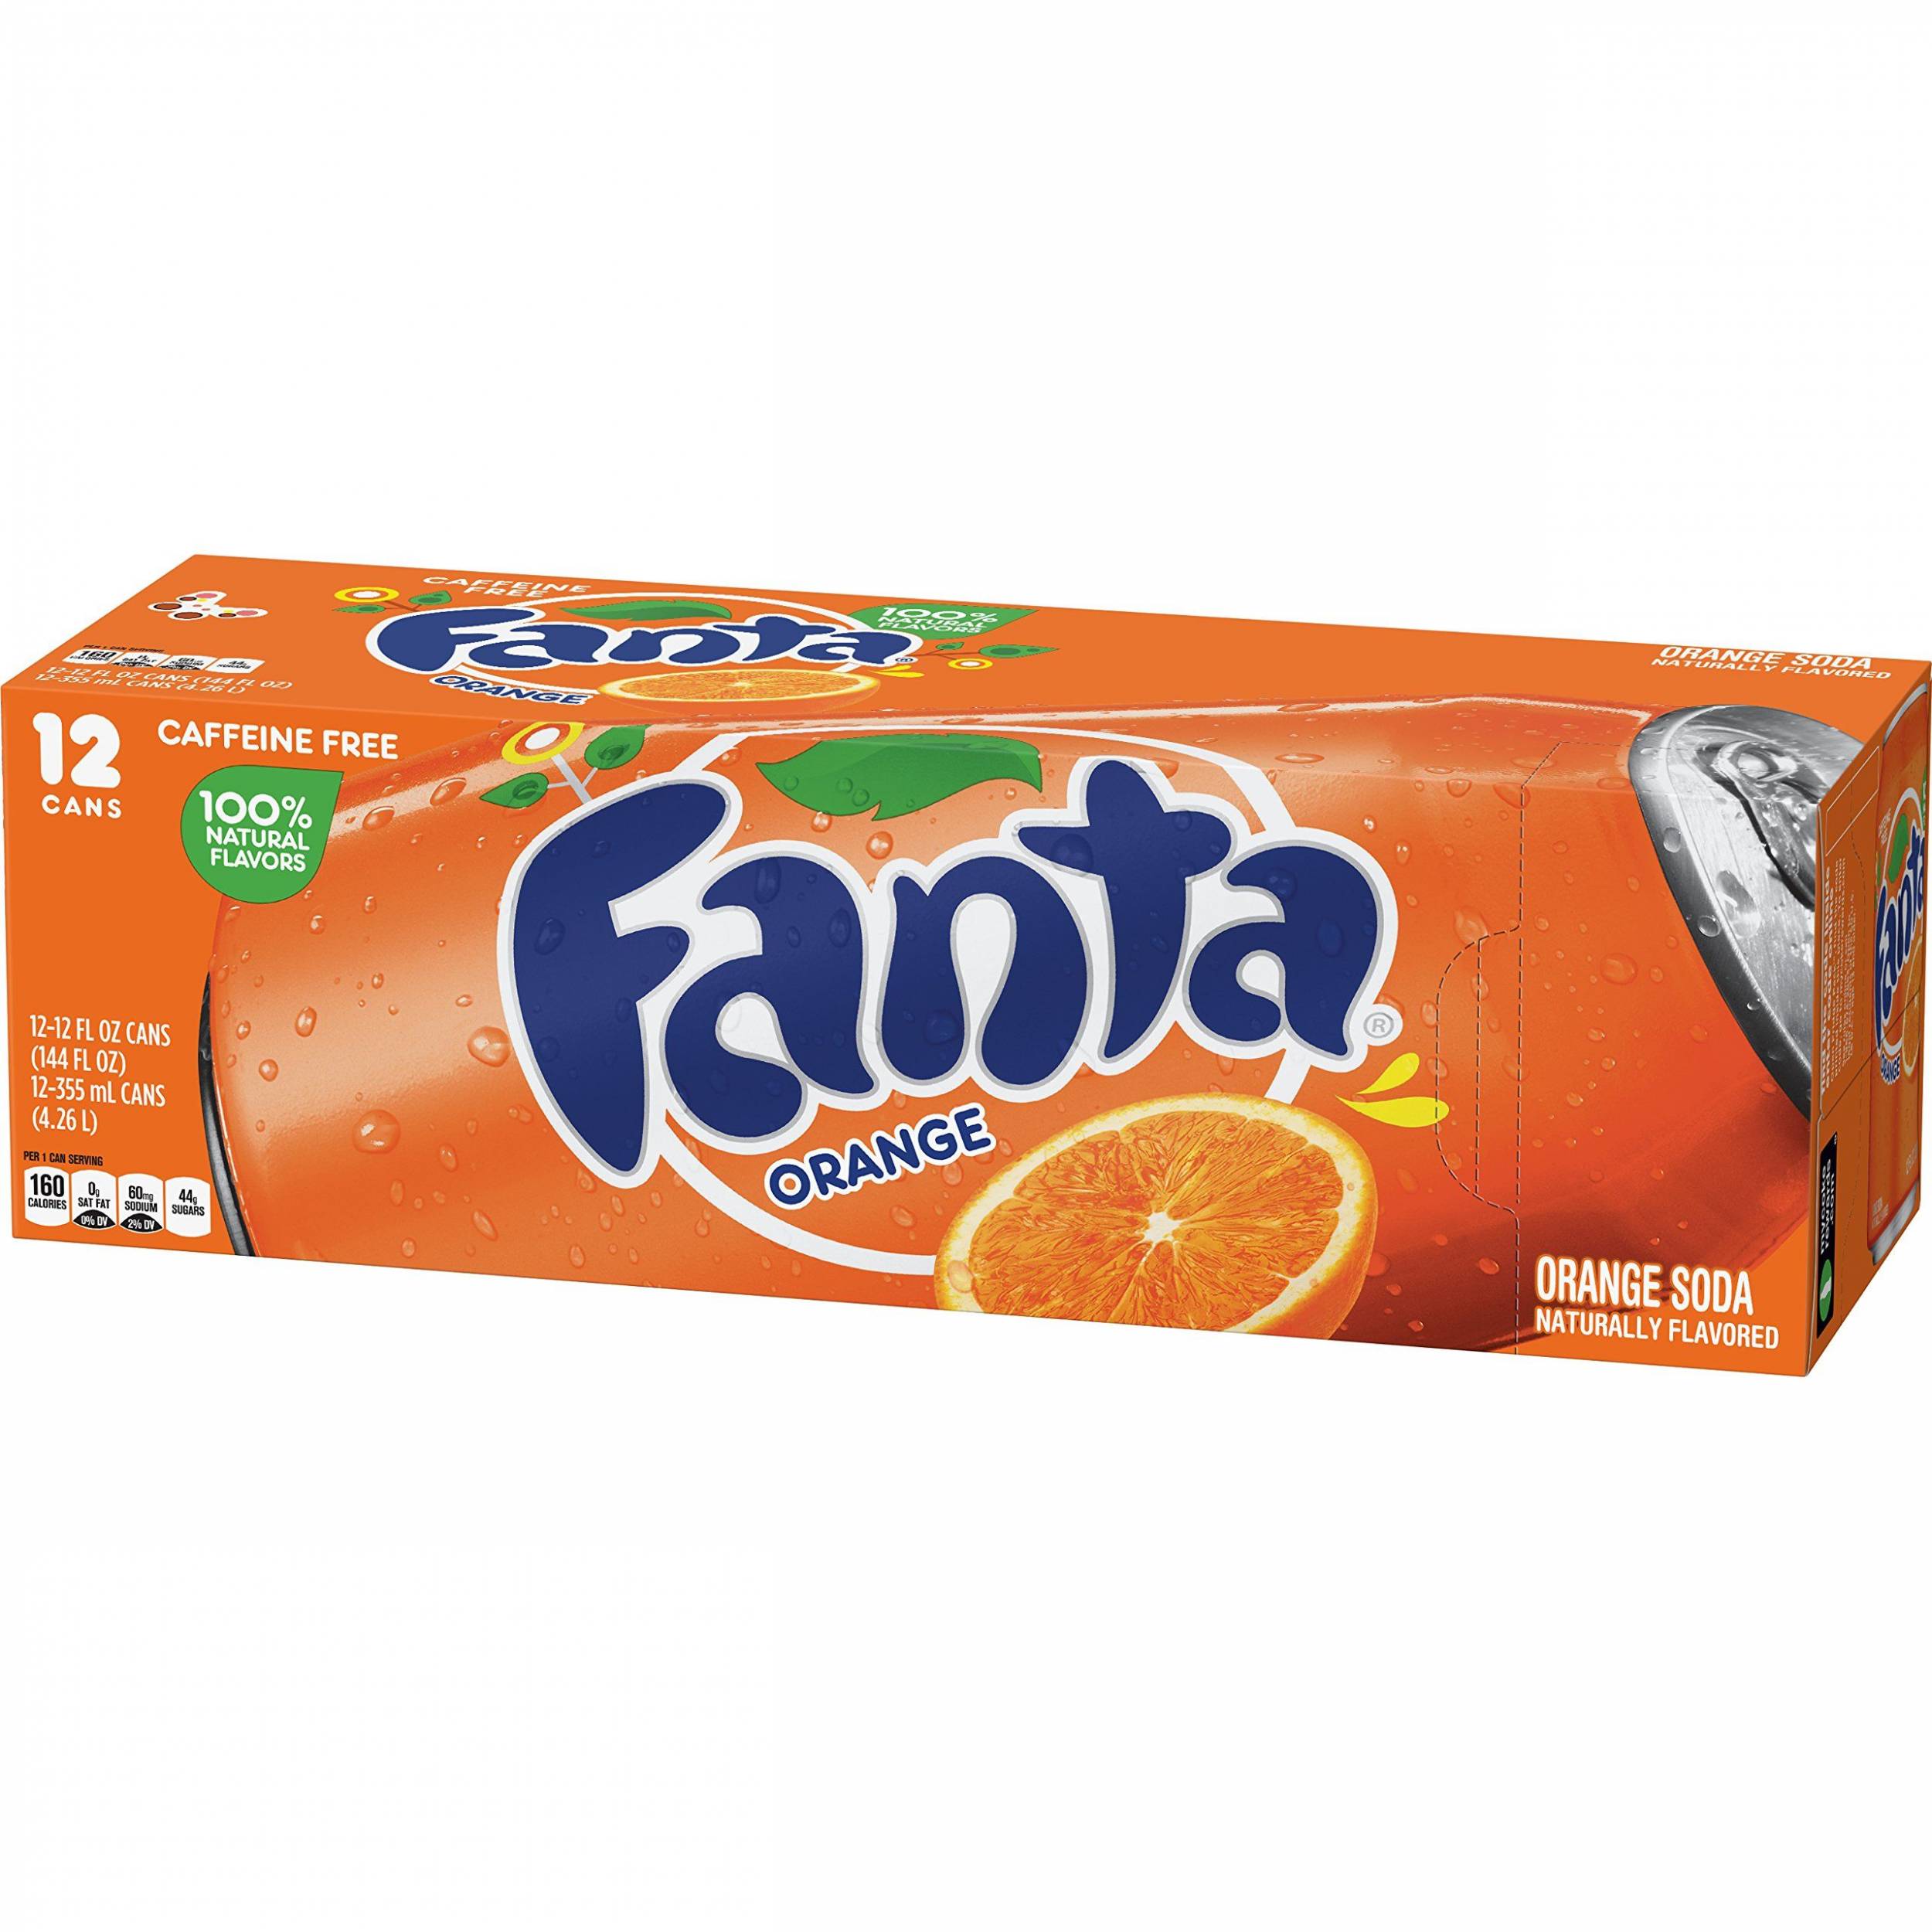 Fanta Orange Soda Fruit Flavored Soft Drink
12 Pack x 12 Oz.